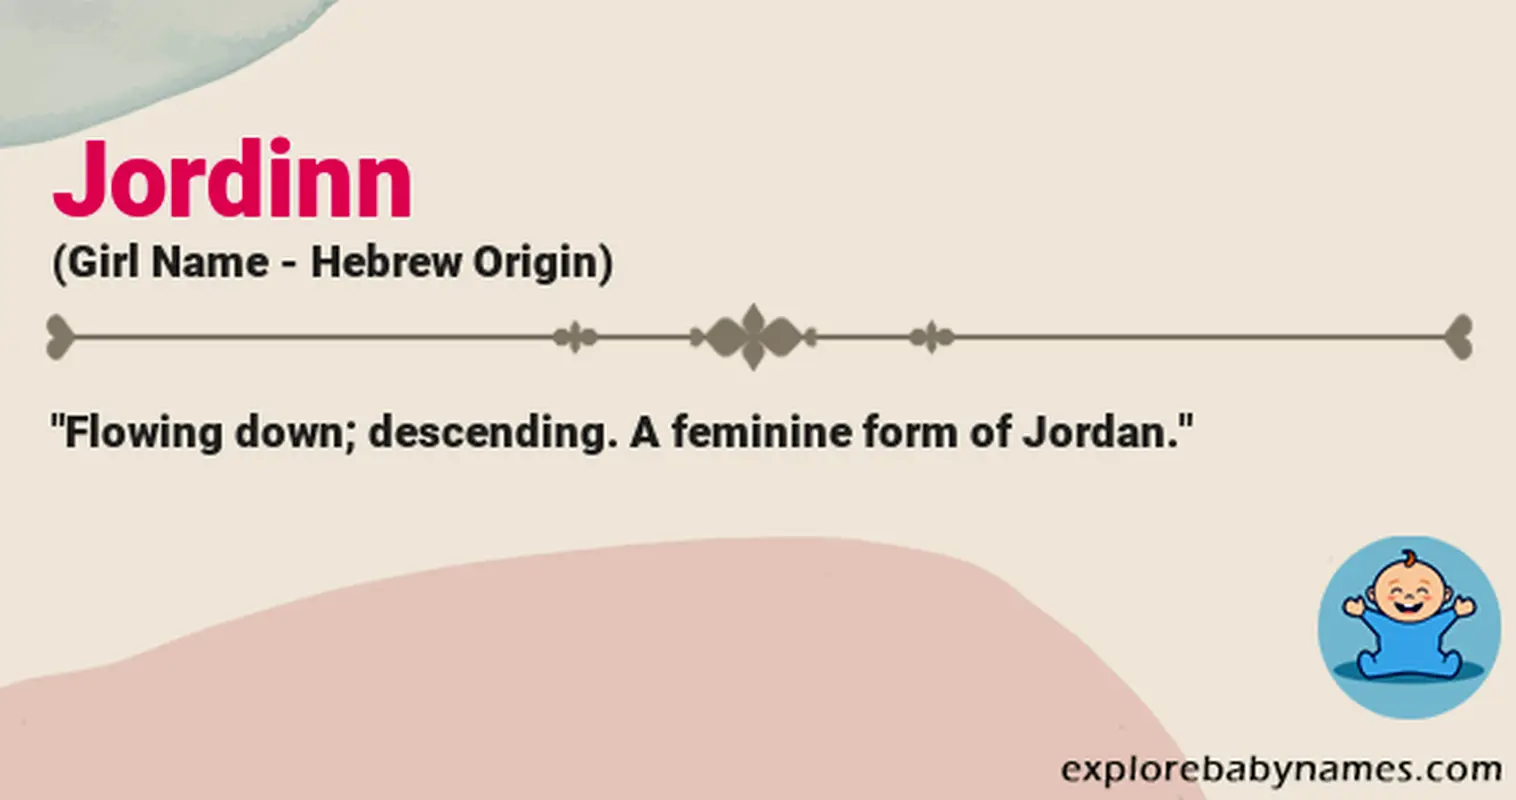 Meaning of Jordinn